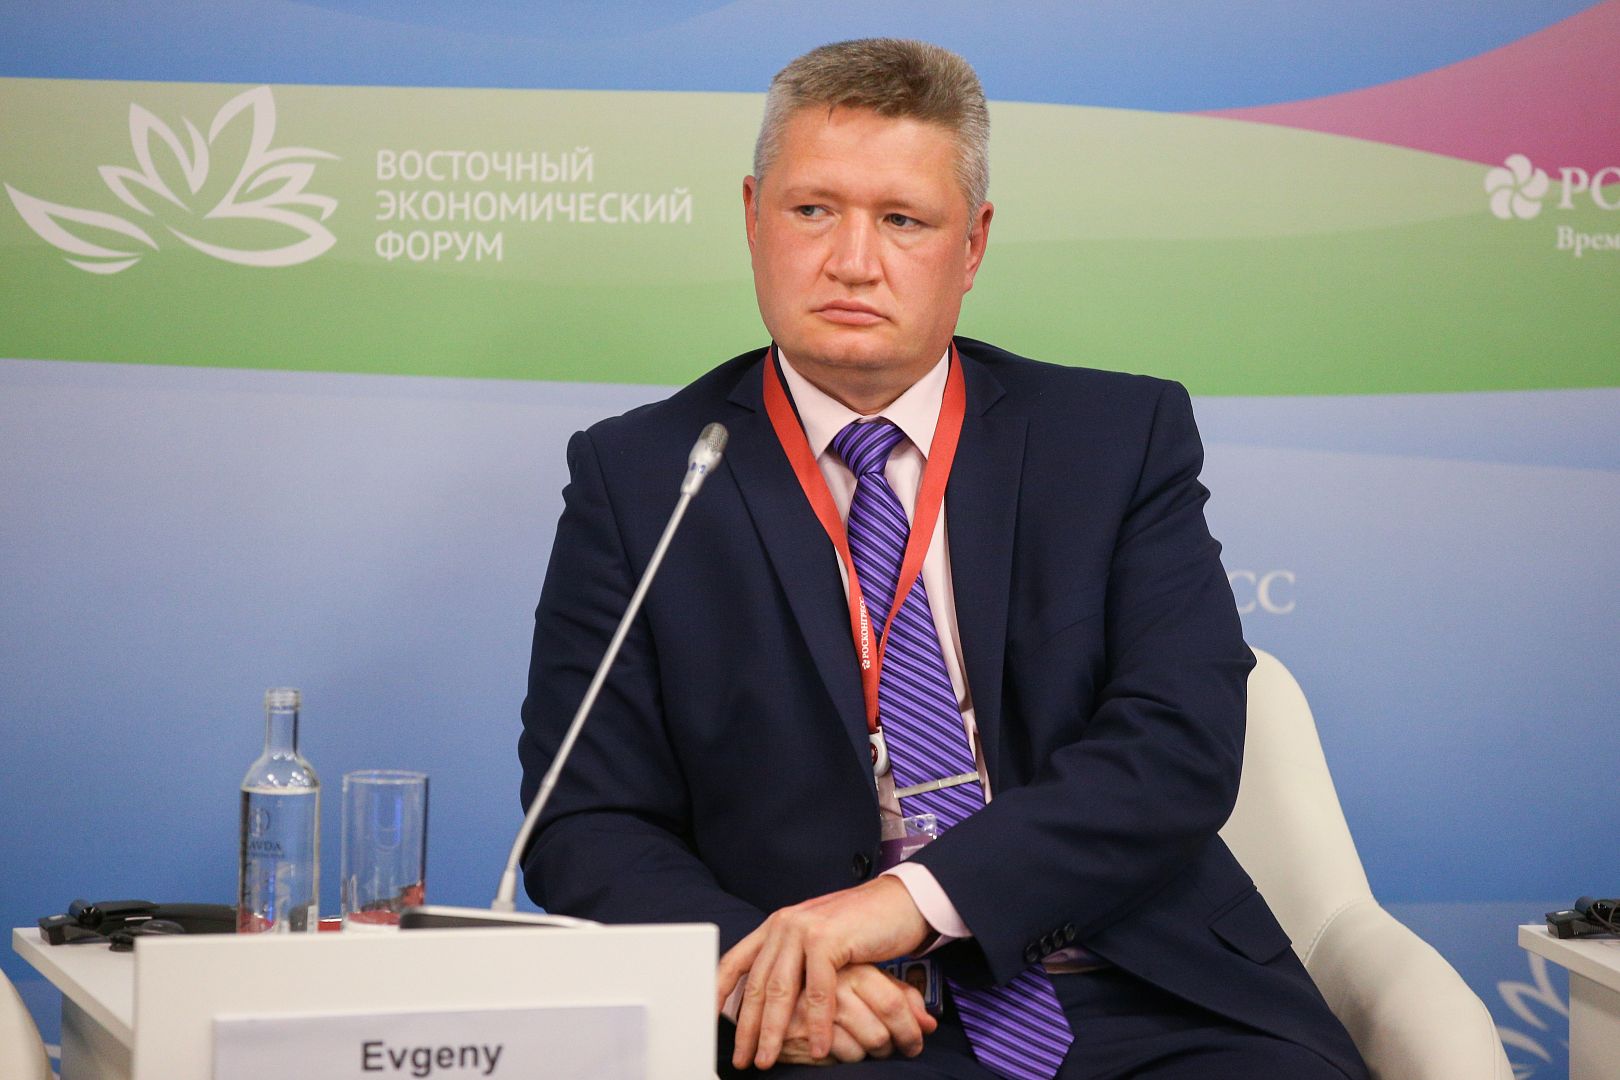 Директор ИМИТ Евгений Журавлев принял участие в Восточном экономическом форуме